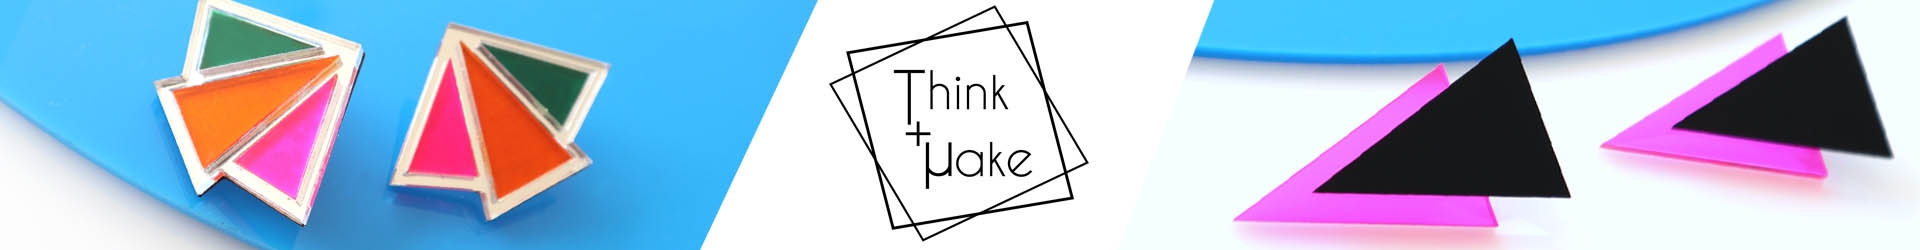 Think+make